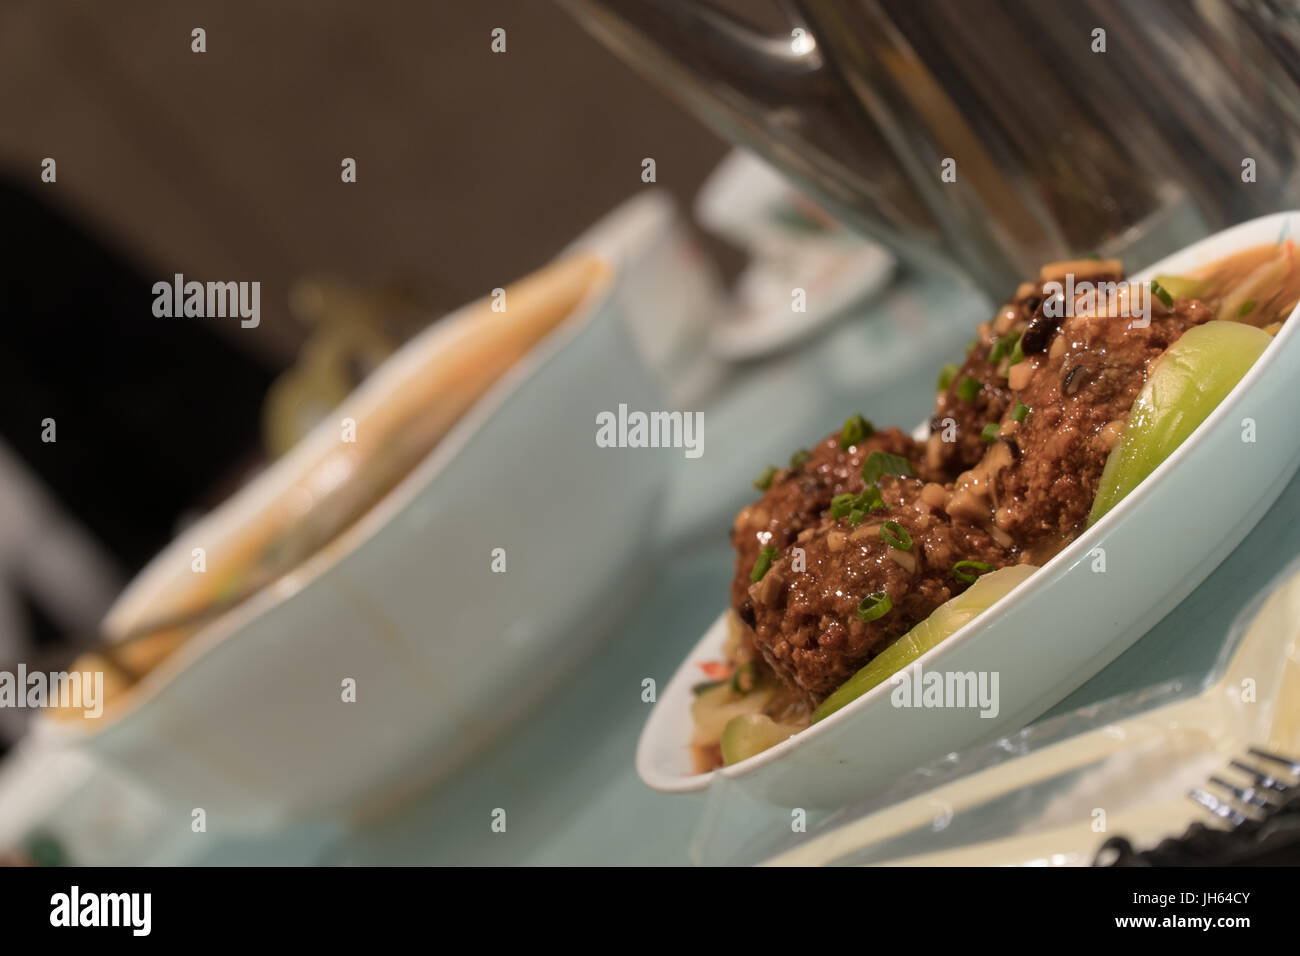 Tête de Lion Chinois boulettes de porc servi dans un restaurant table entre autres plats et ustensiles. Banque D'Images